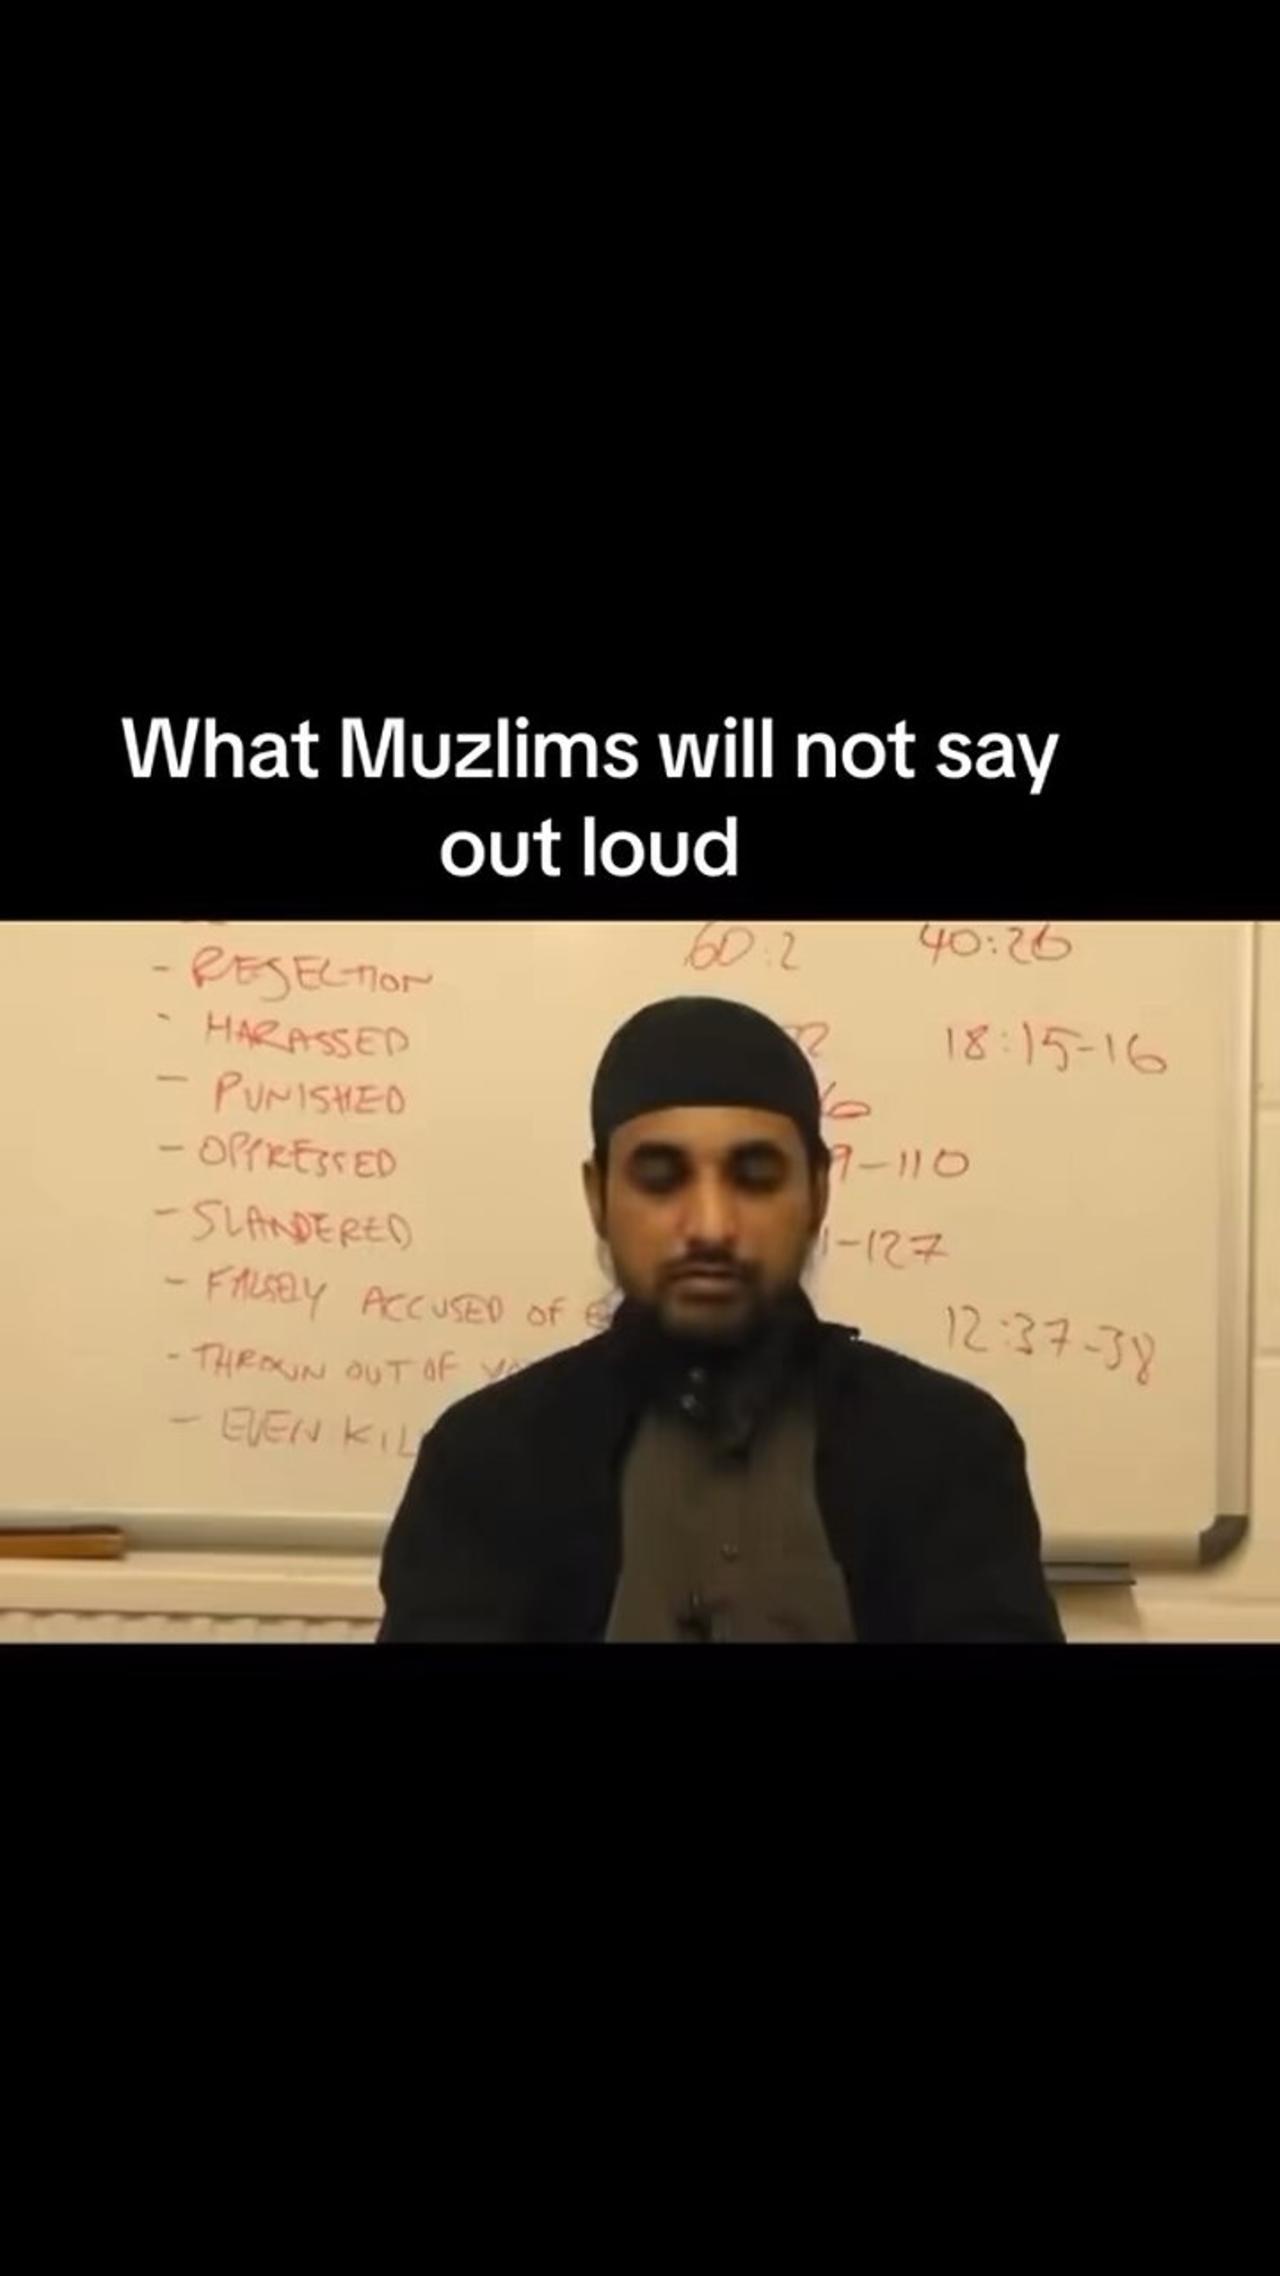 Islam as it is